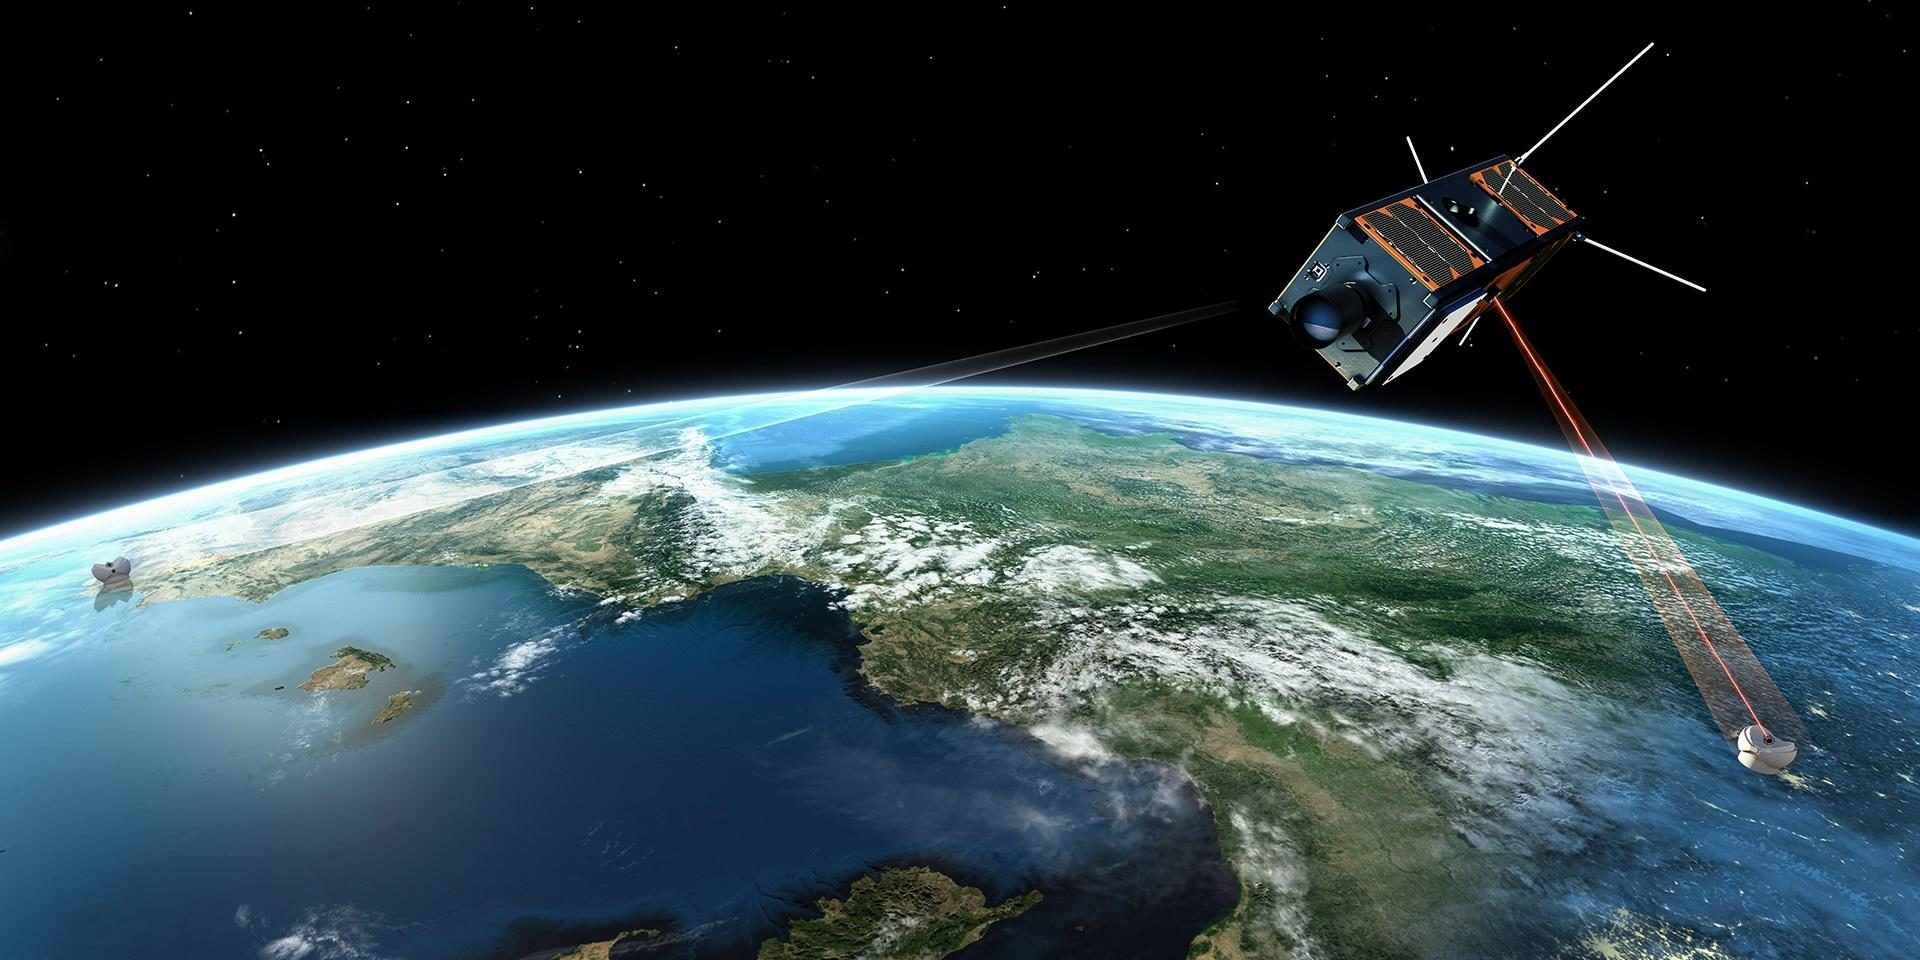 Kleinsatelliten: Warum sie eine Riesenchance und ein großes Risiko sind